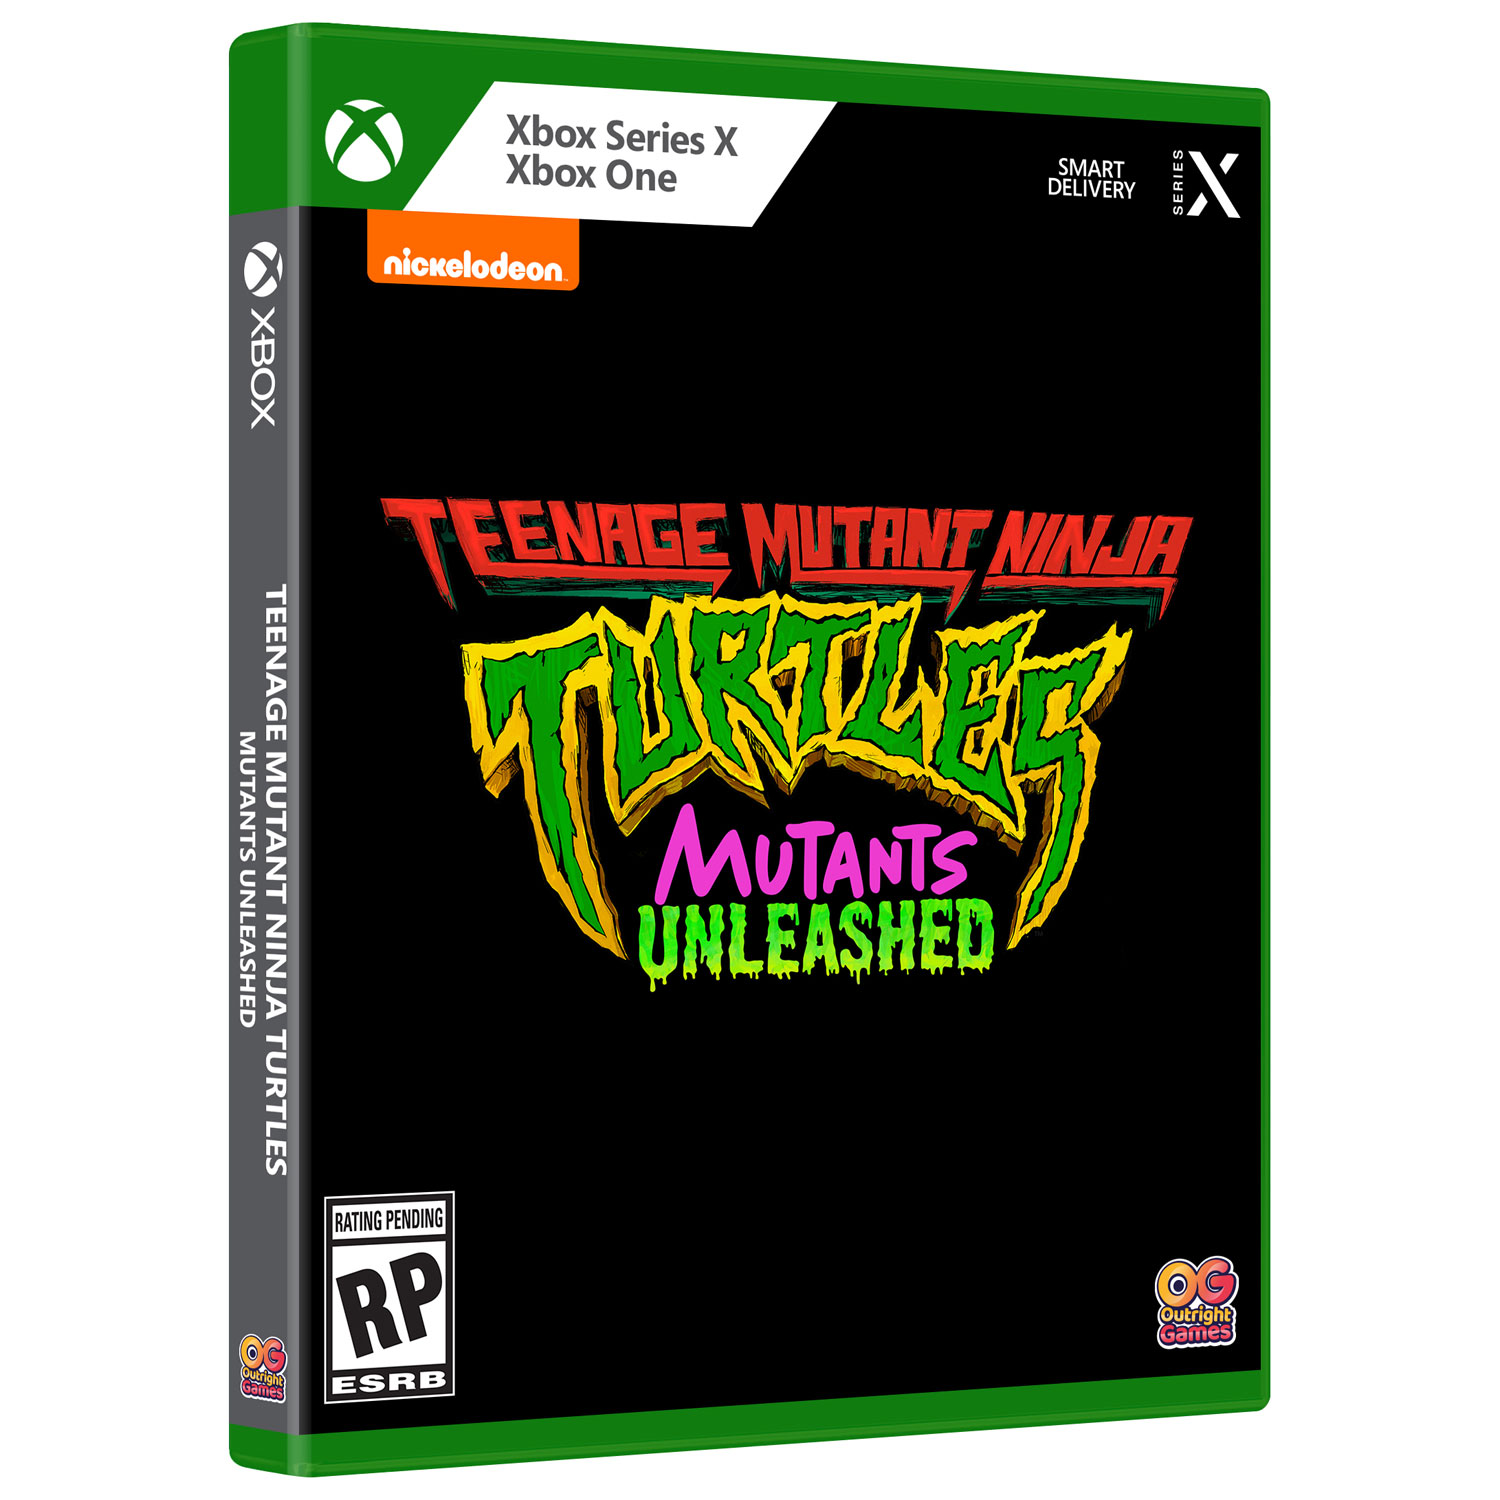 Teenage Mutant Ninja Turtles: Mutants Unleashed (Xbox Series X/Xbox One)